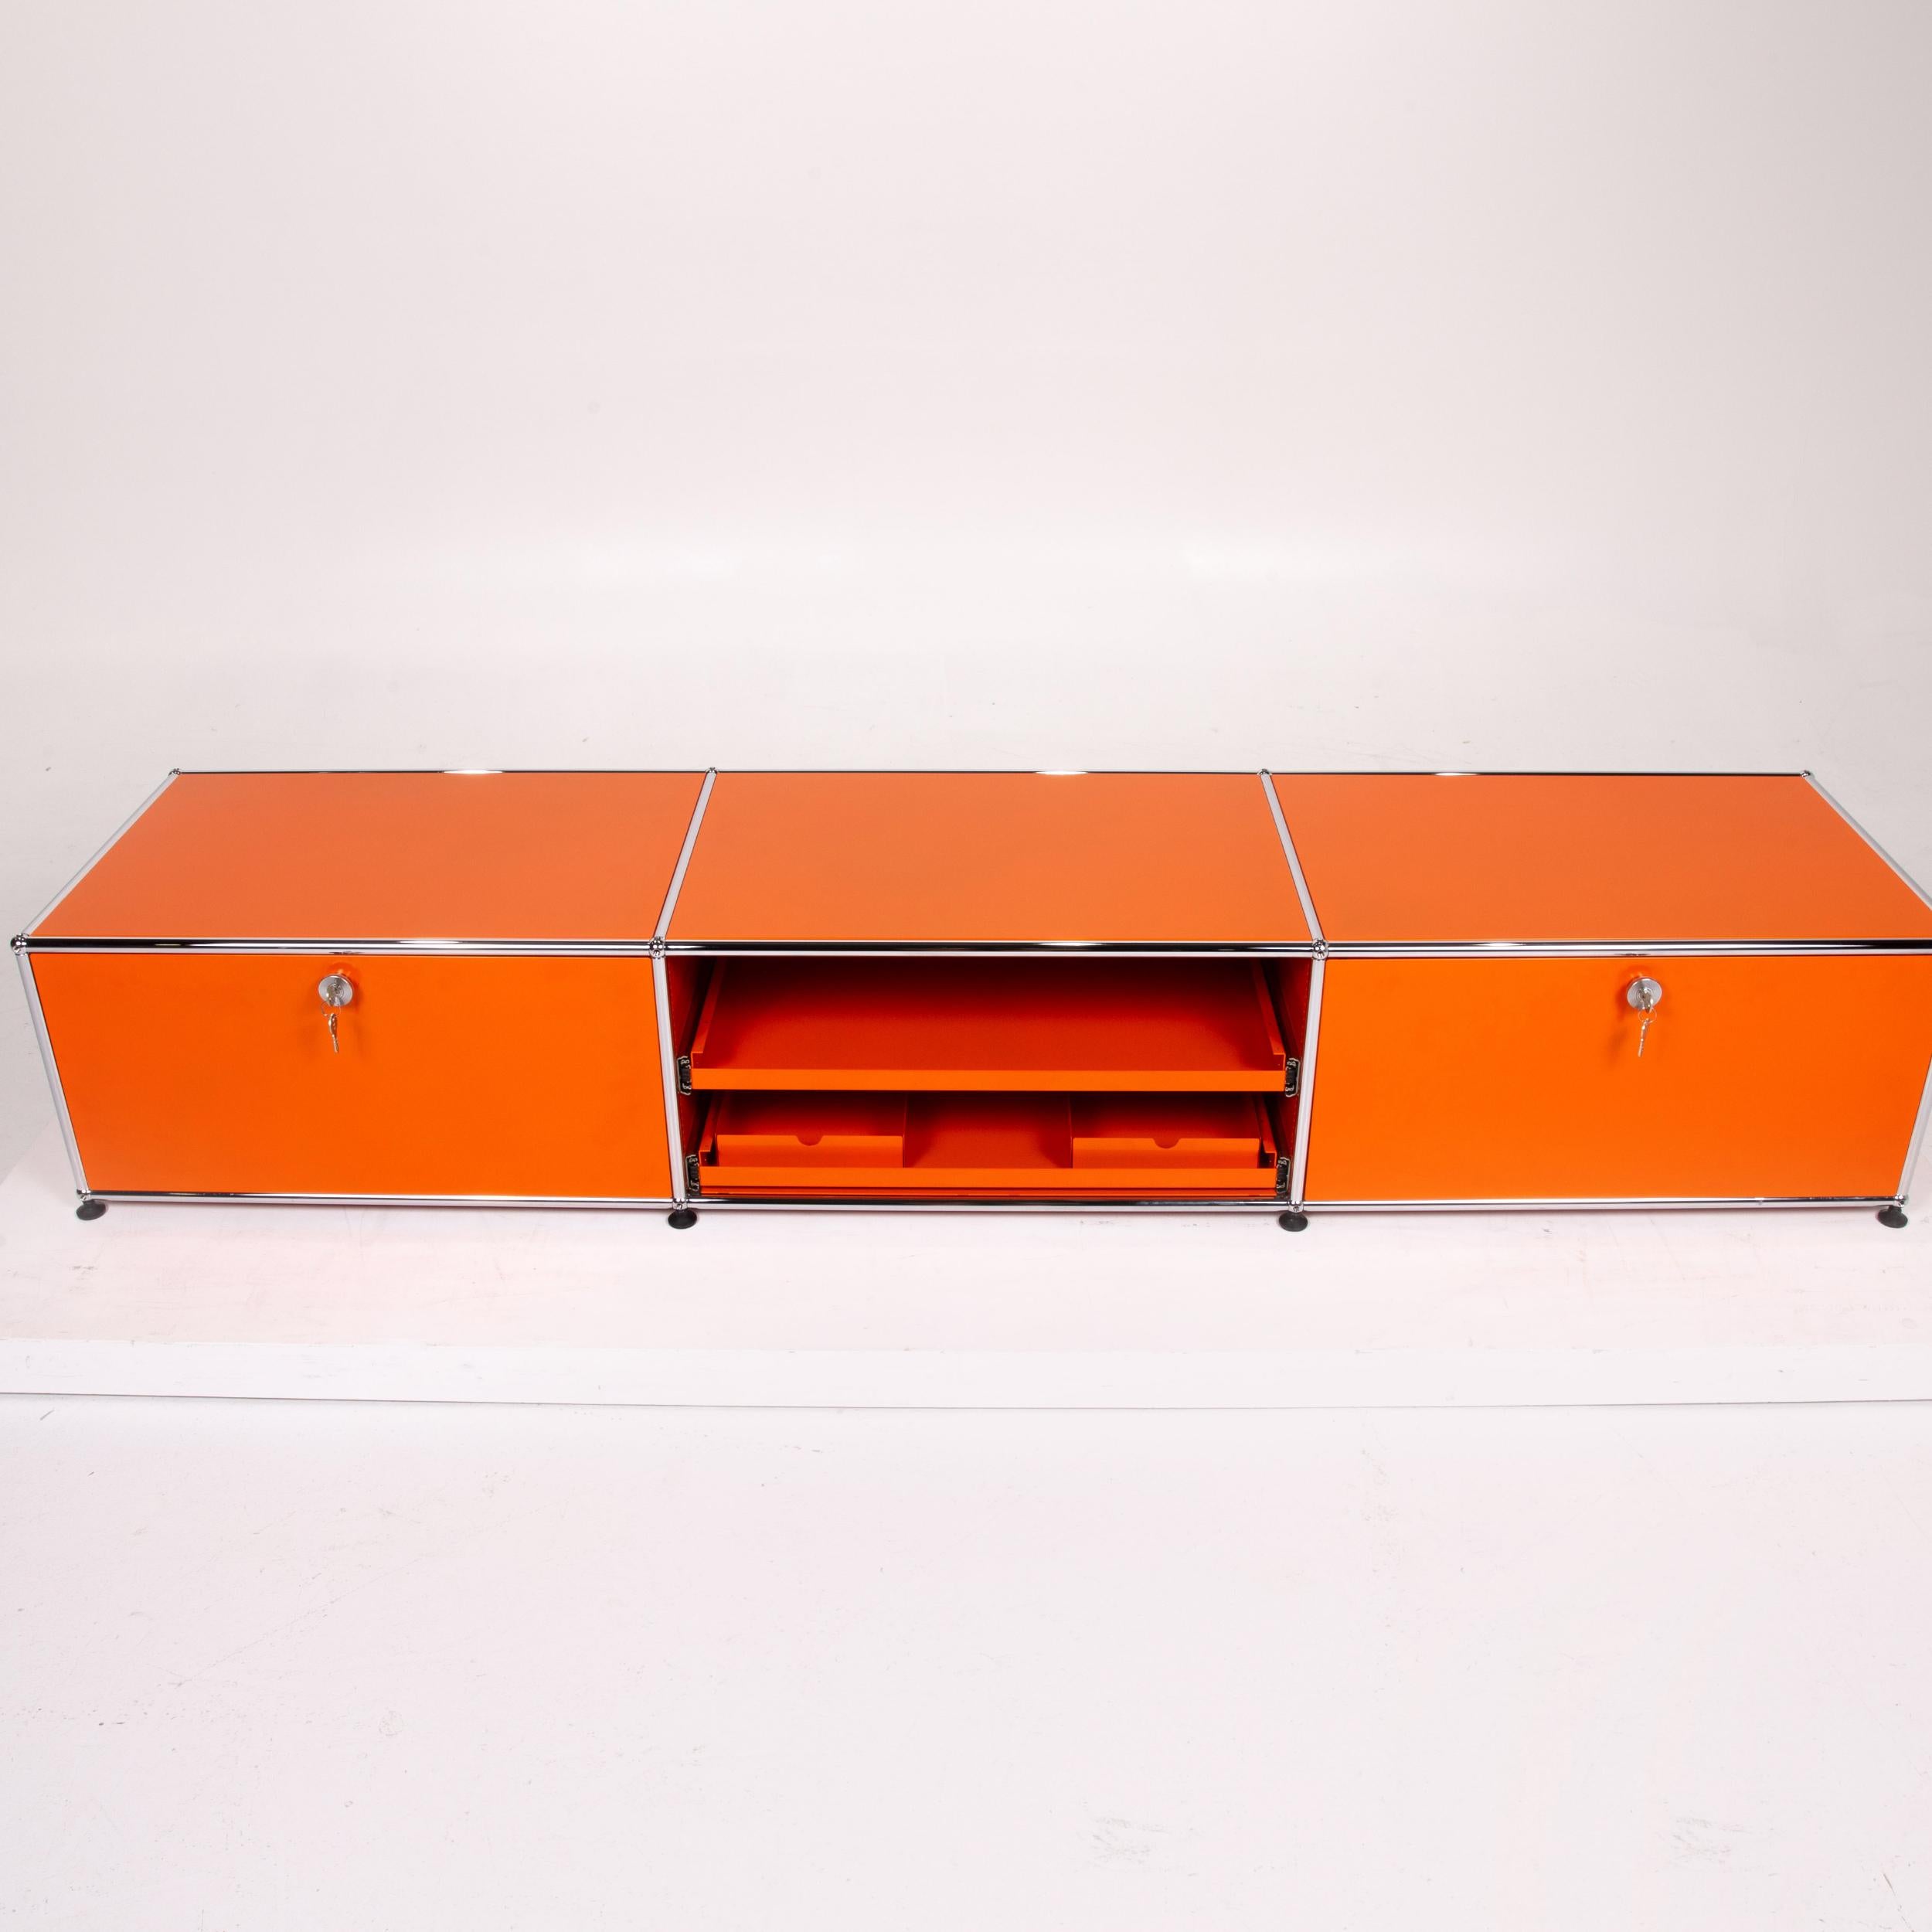 Contemporary Usm Haller Metal Sideboard Orange Office Furniture Shelf Modular For Sale